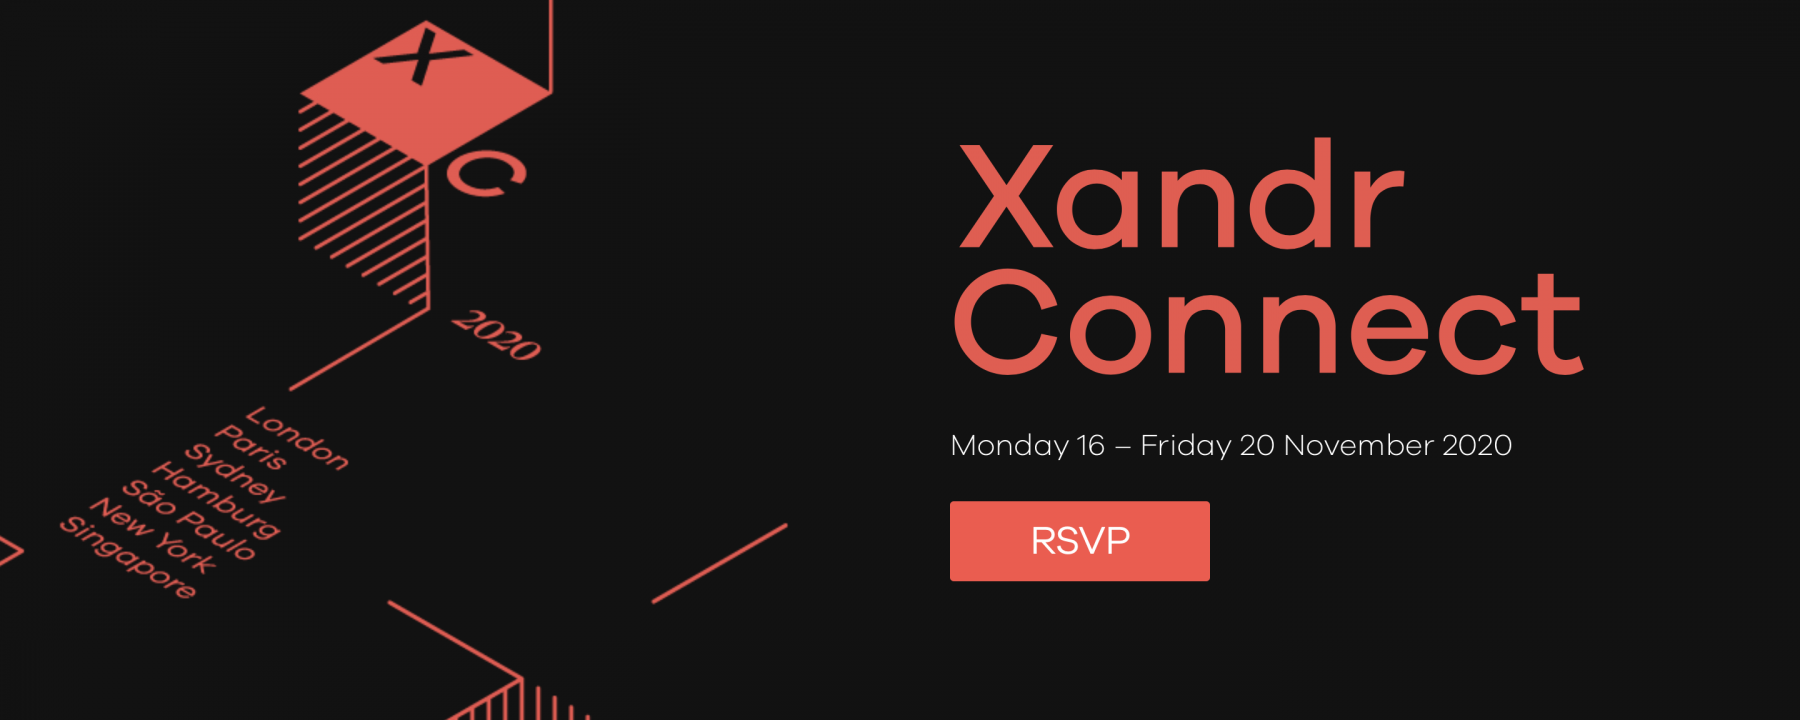 Xandr Connect, event virtuel organisé par Xandr du 17 au 20 novembre